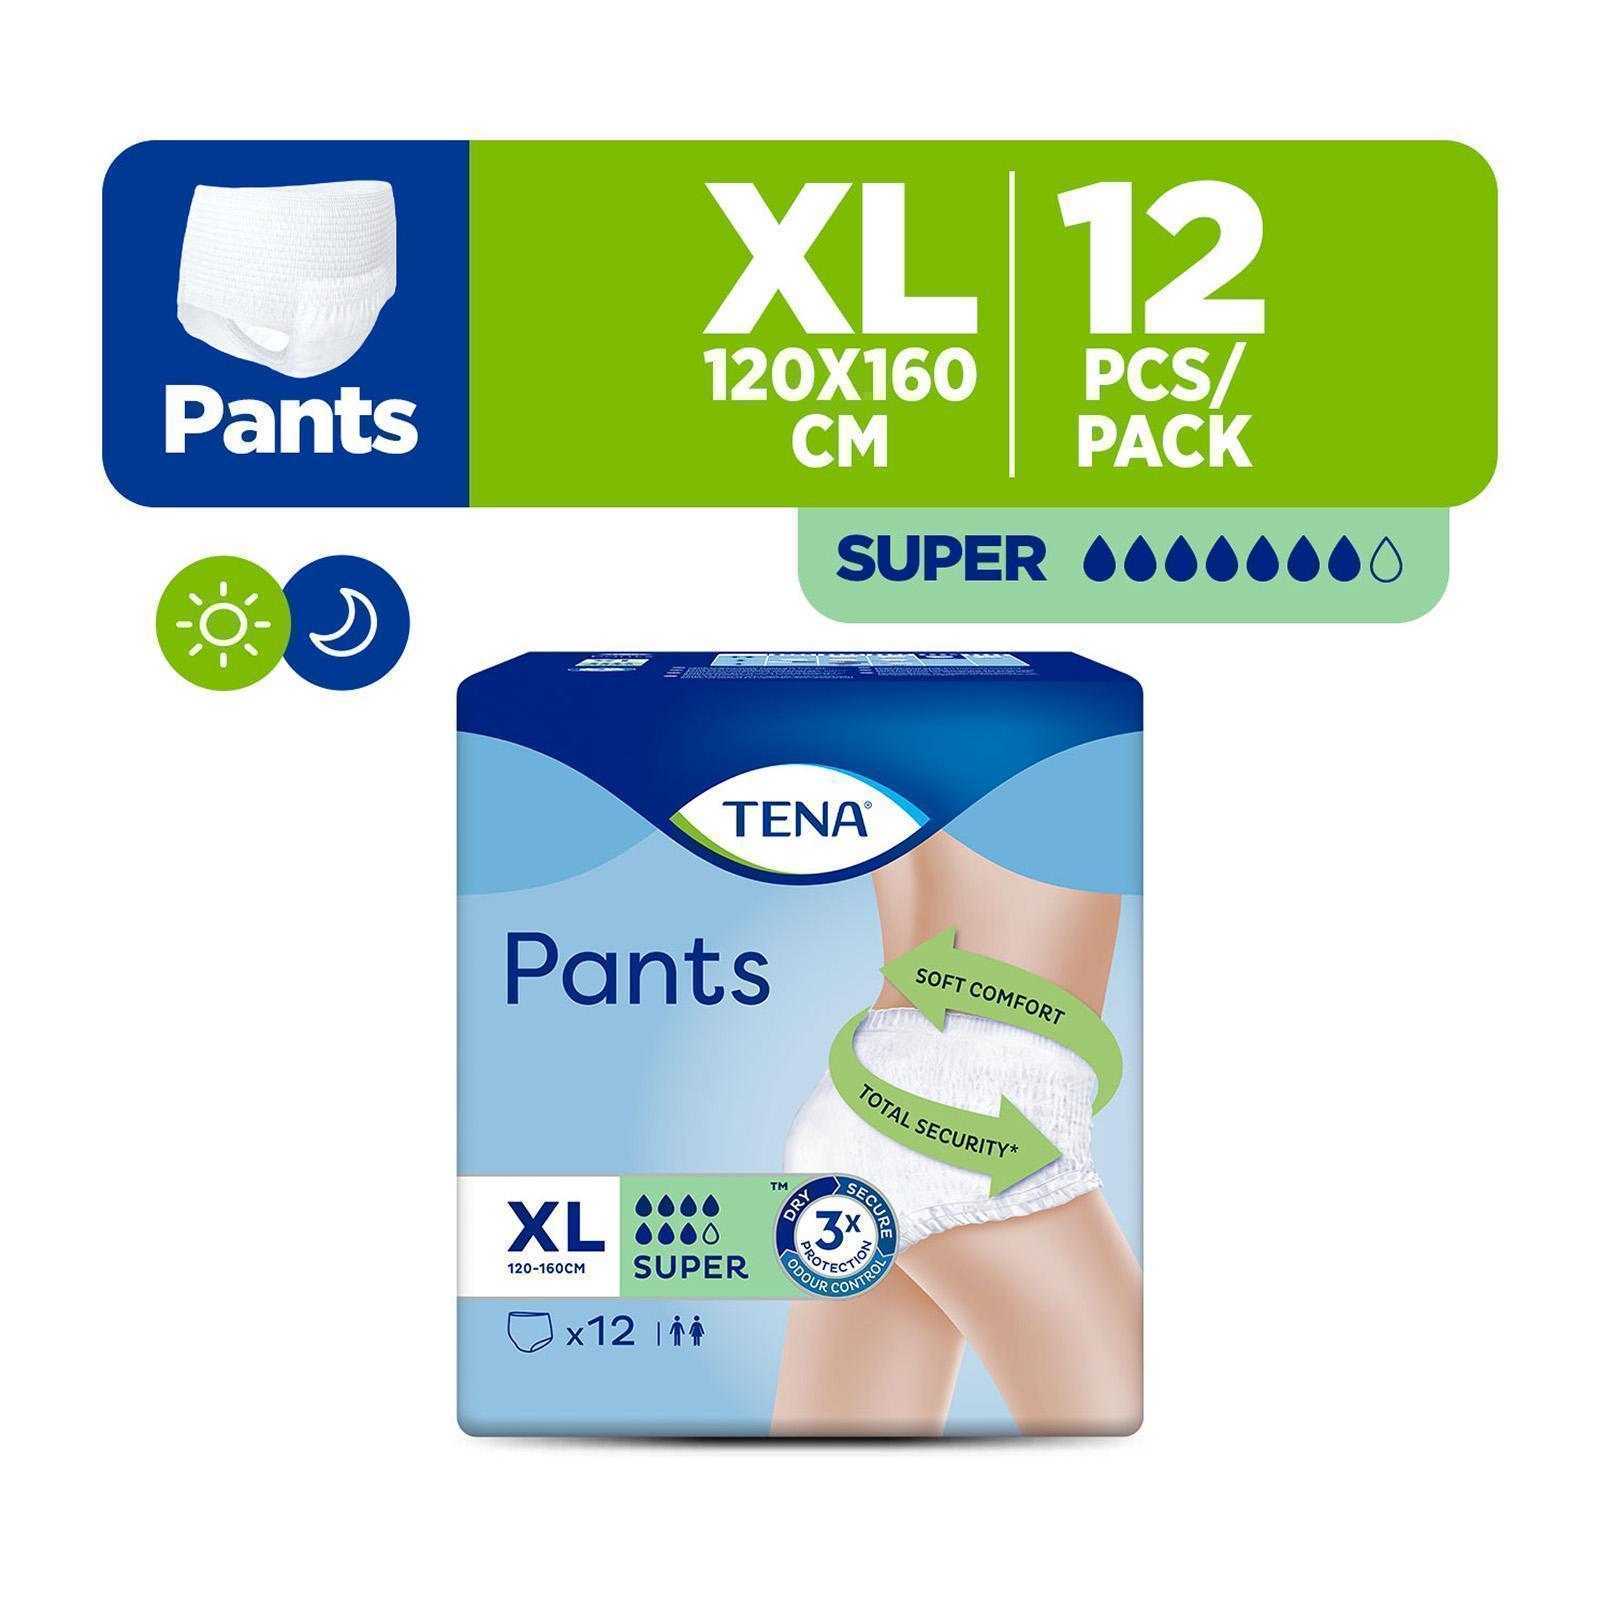 TENA Pants Super | Soft & super absorbent incontinence pants